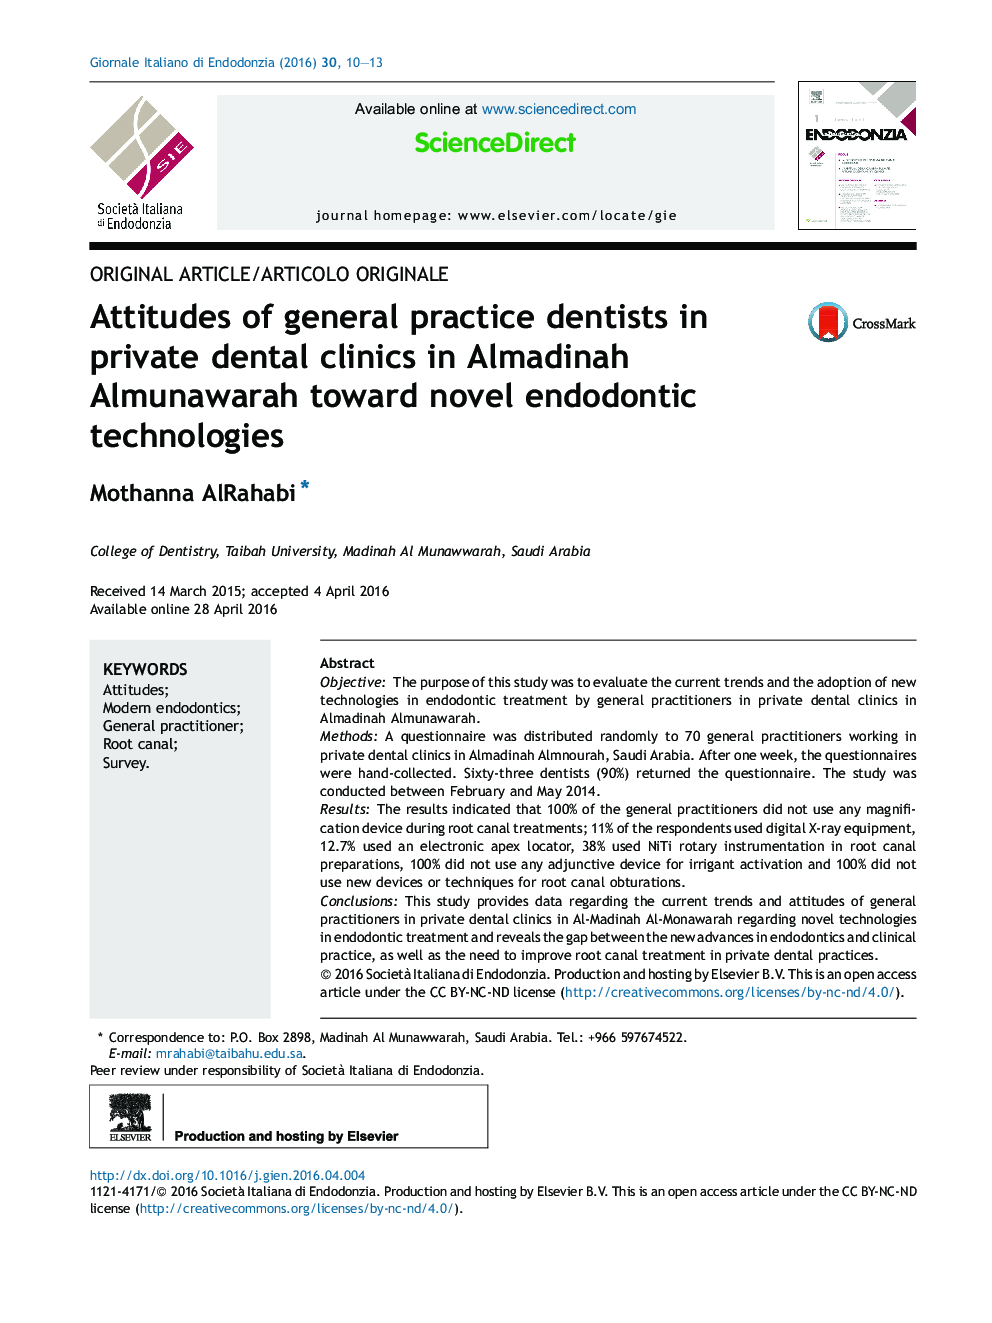 نگرش دندانپزشکان عمومی در کلینیک های خصوصی دندانپزشکی در Almadinah Almunawarah نسبت به تکنولوژی های نوین درمان ریشه